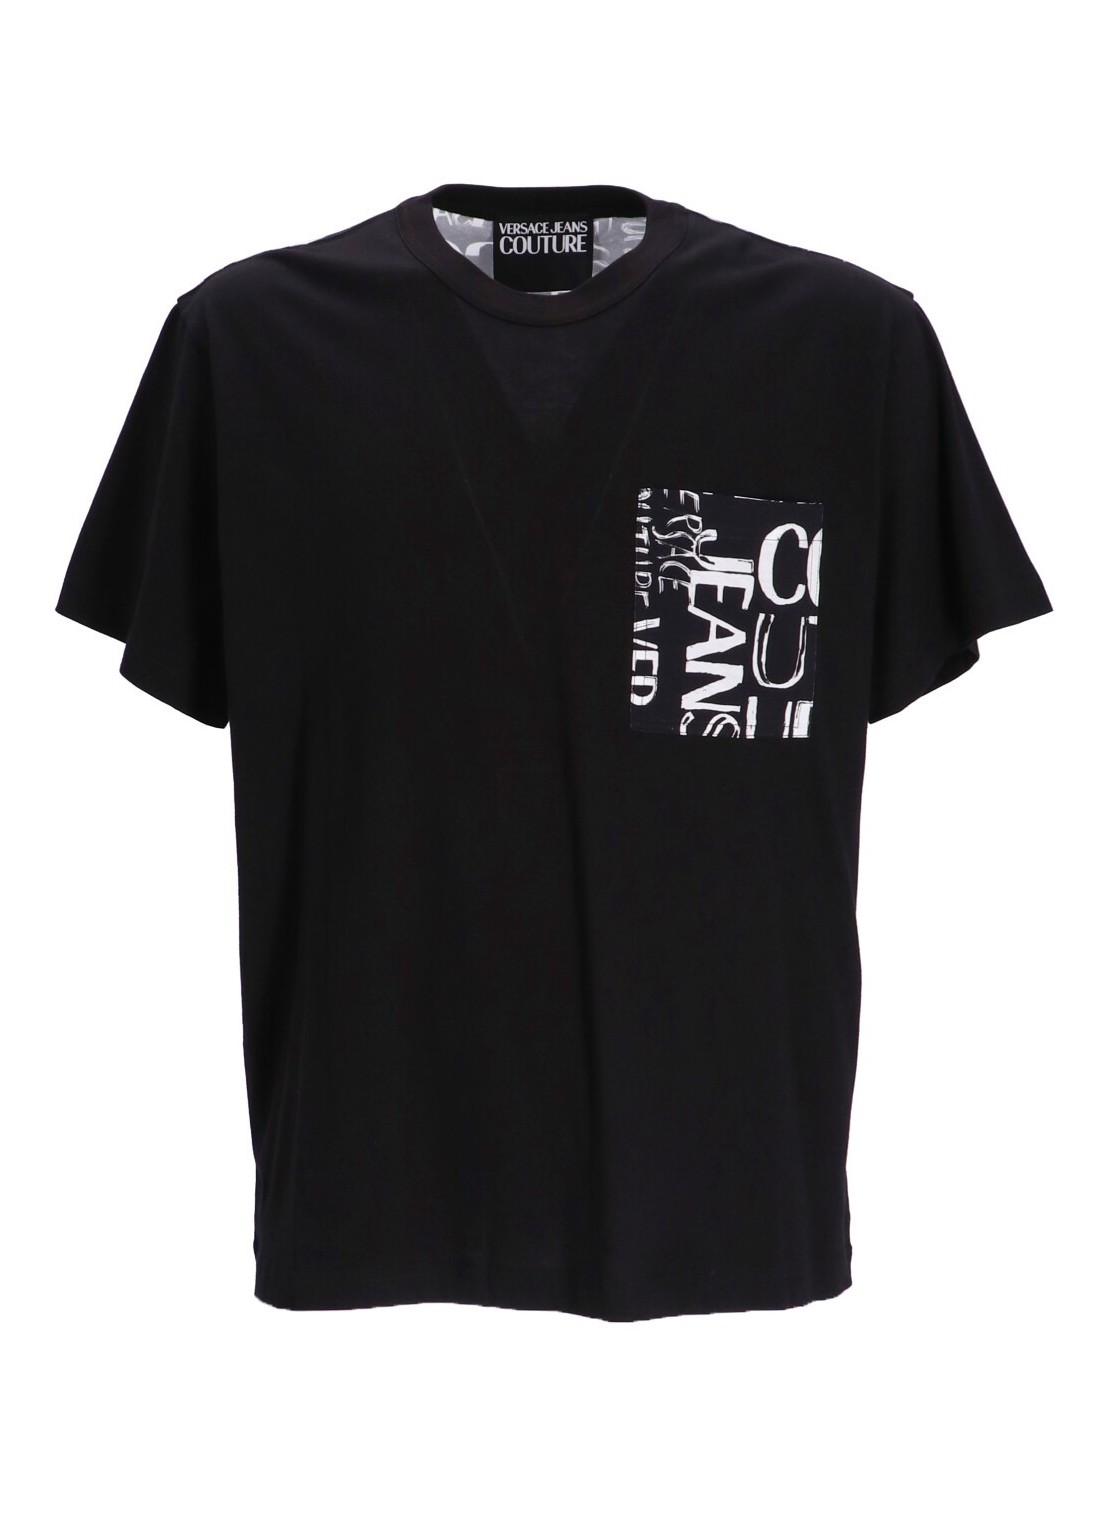 Camiseta versace t-shirt man 74up601 r pkt contr doodle logo t-shirt 74gah6r2 899 talla L
 